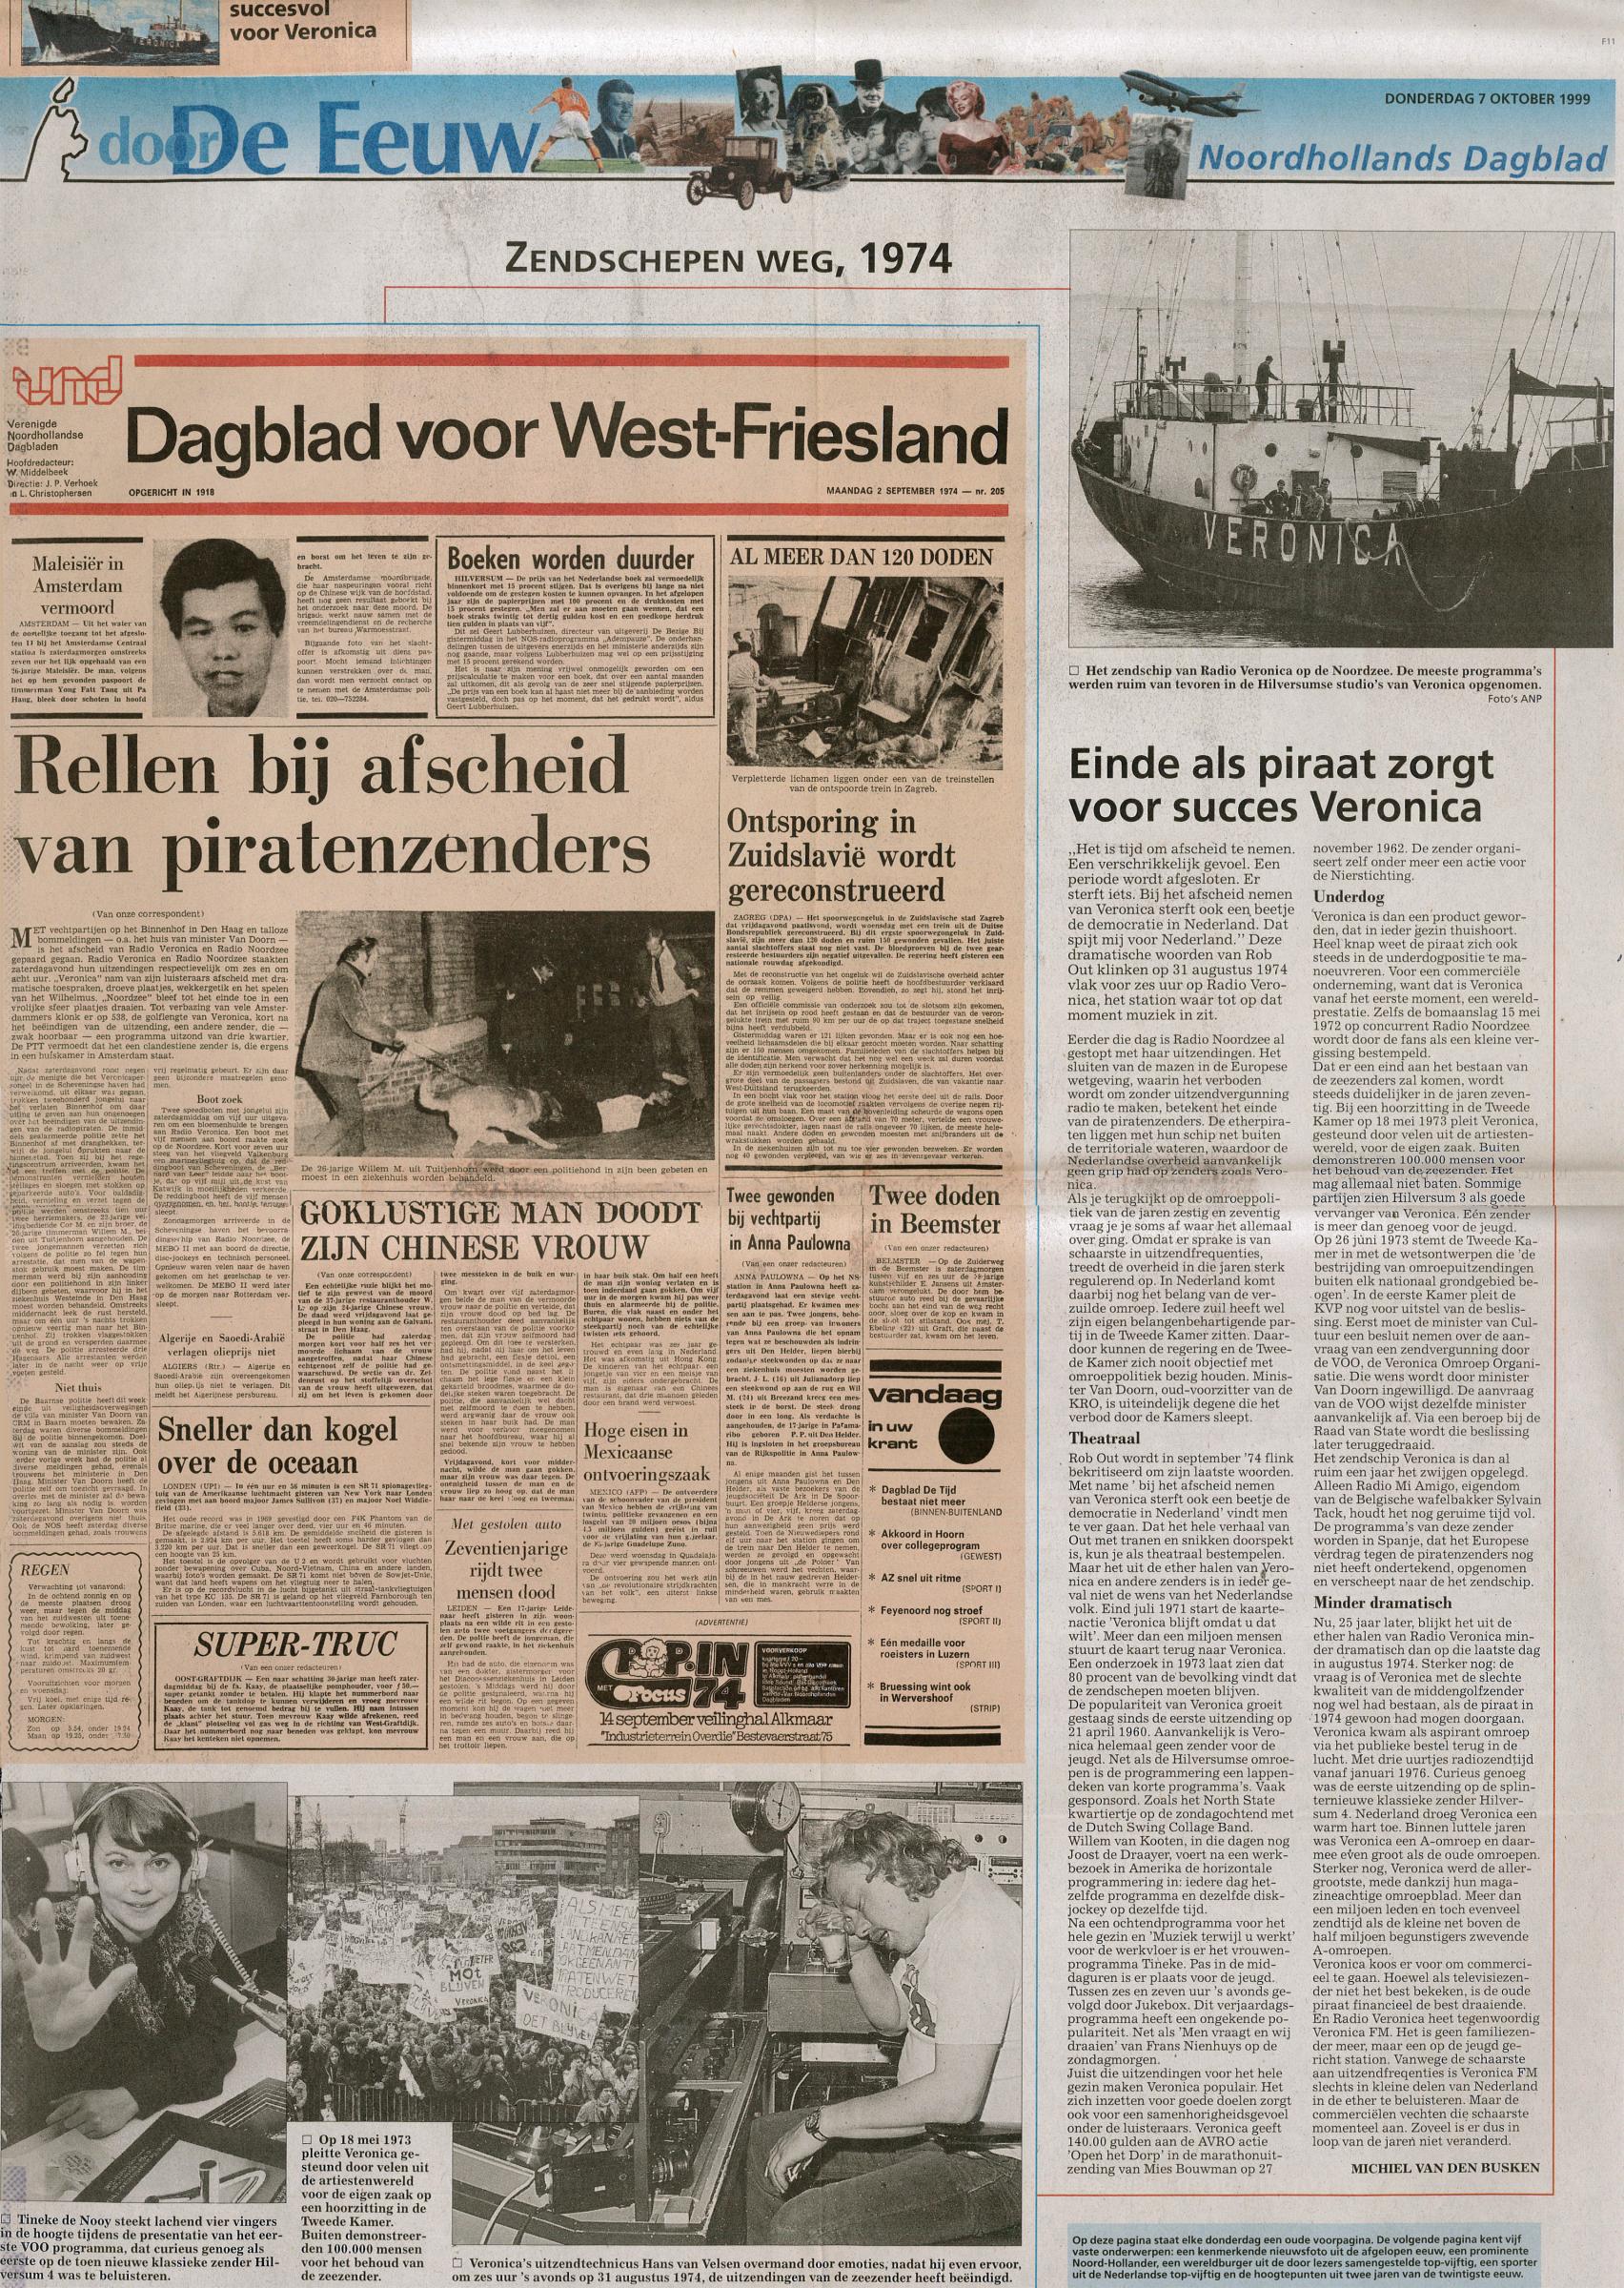 19991007 NH Dagblad Zendschepen weg 1974.jpg